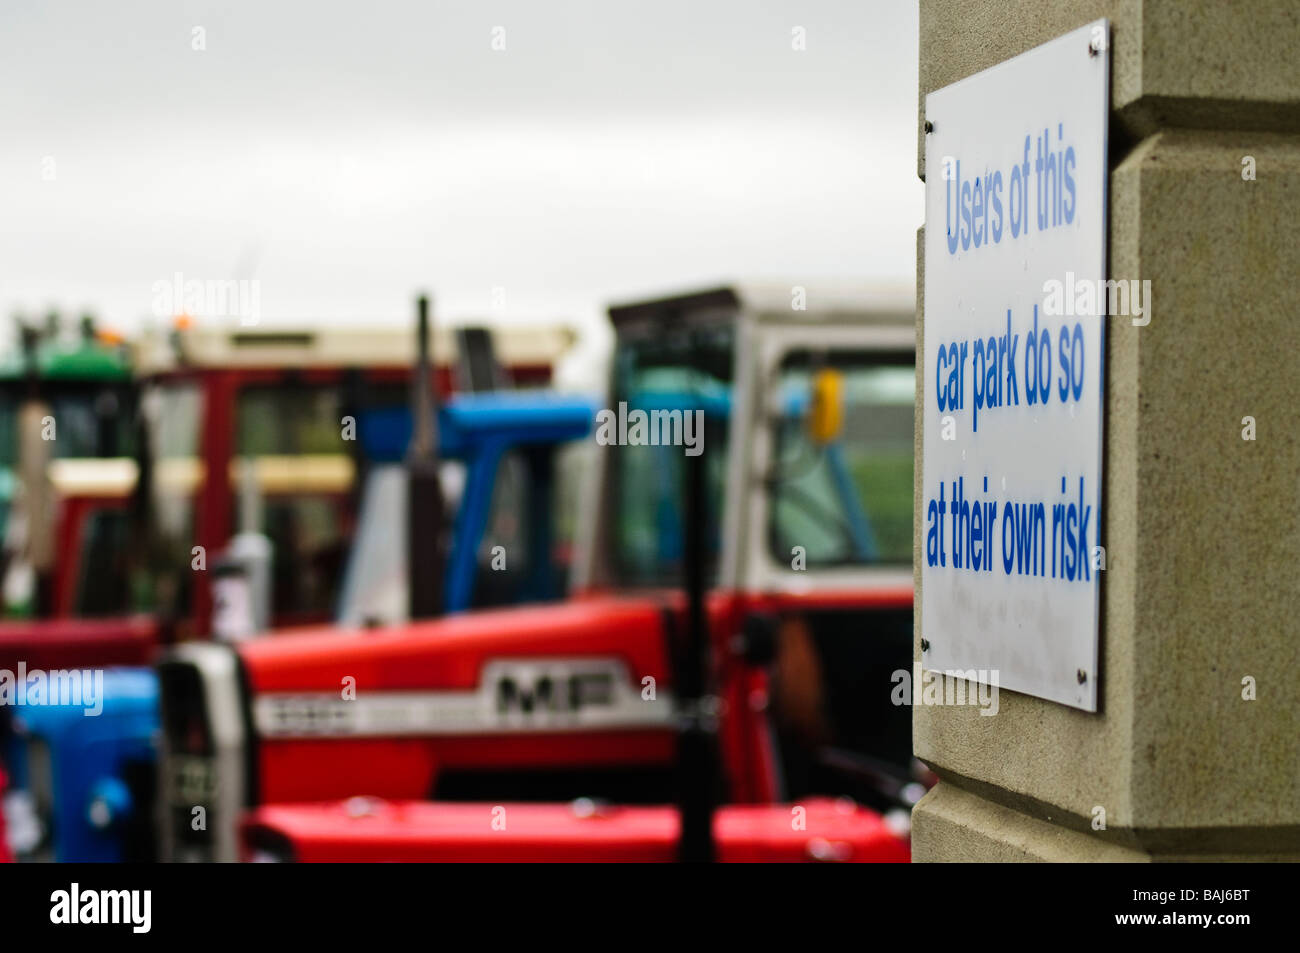 Inscrivez-vous dans le parking "Les utilisateurs de ce parking, le font à leurs propres risques' avec les tracteurs de ferme stationné à l'arrière-plan. Banque D'Images